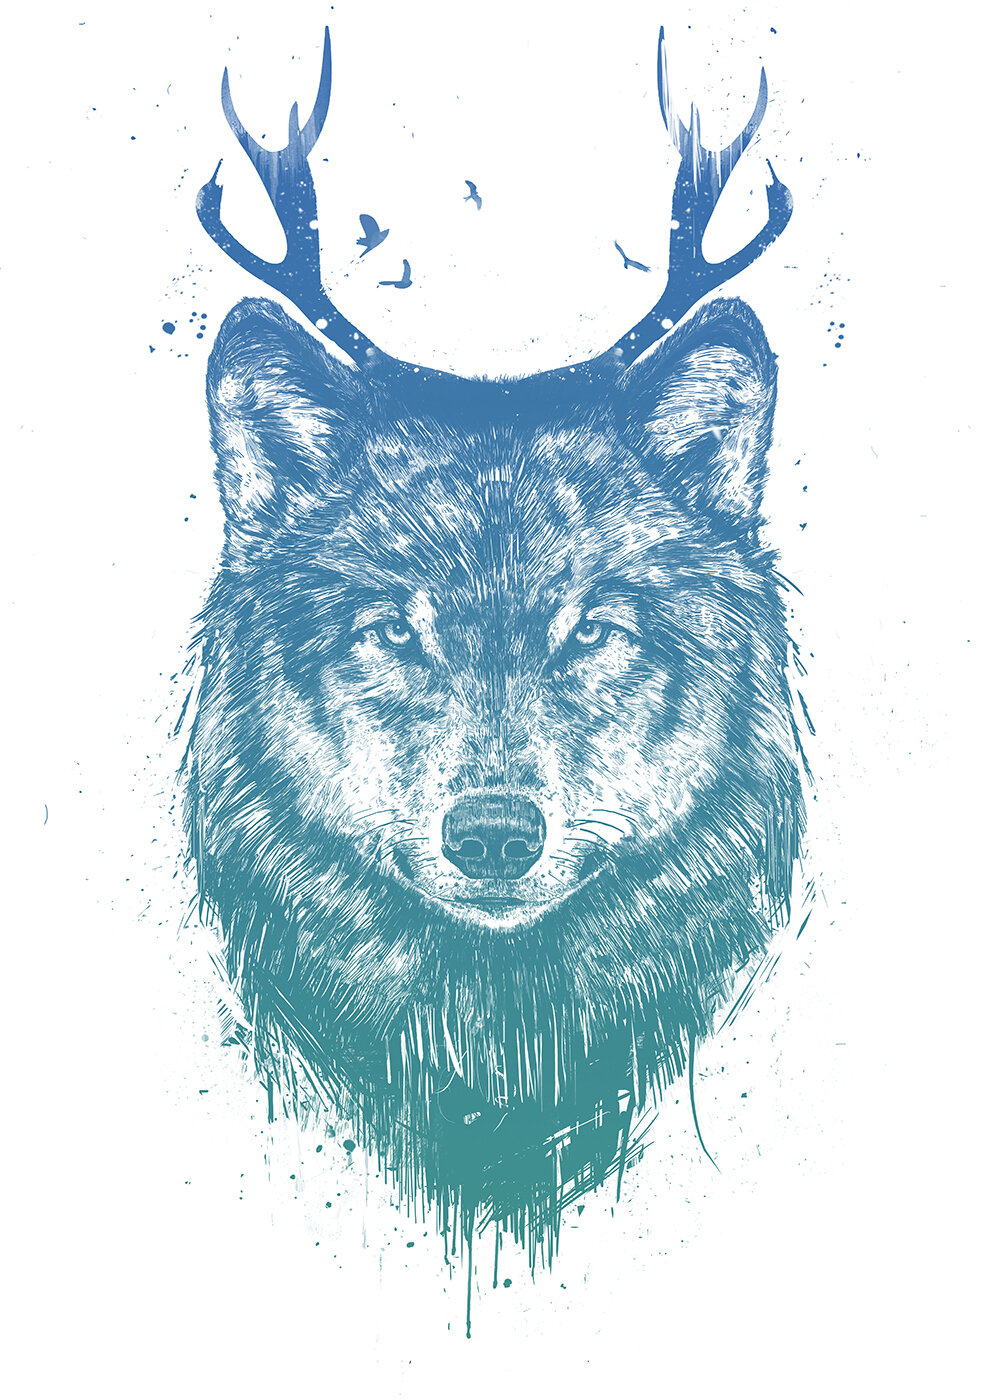 Интерьерный постер "Deer wolf" размера 40x50 см 400*500 мм репродукция без рамы в тубусе